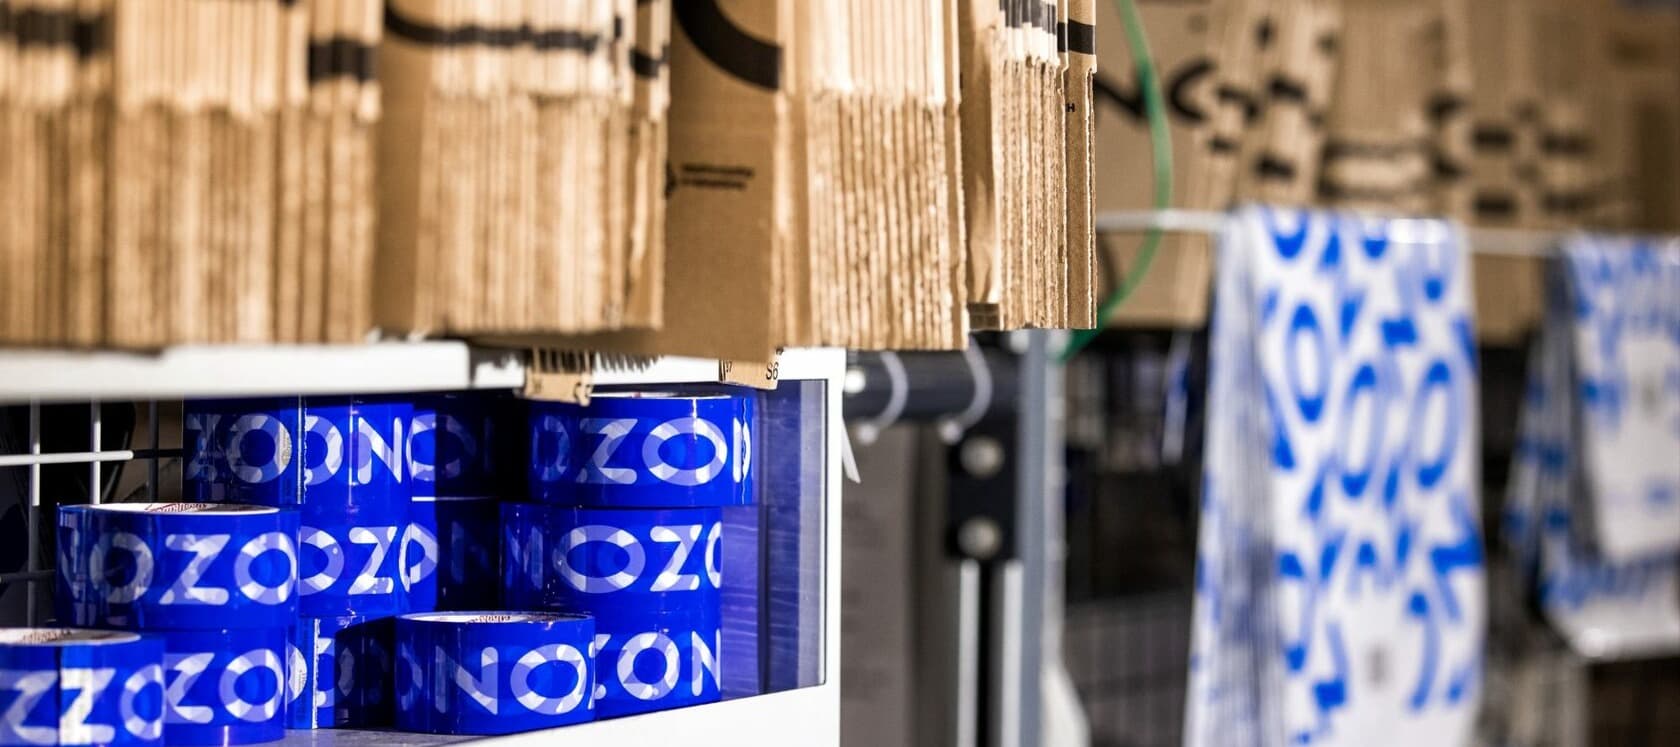 Фото новости: "Ozon ввел льготную логистику для новых продавцов одежды, обуви и аксессуаров"